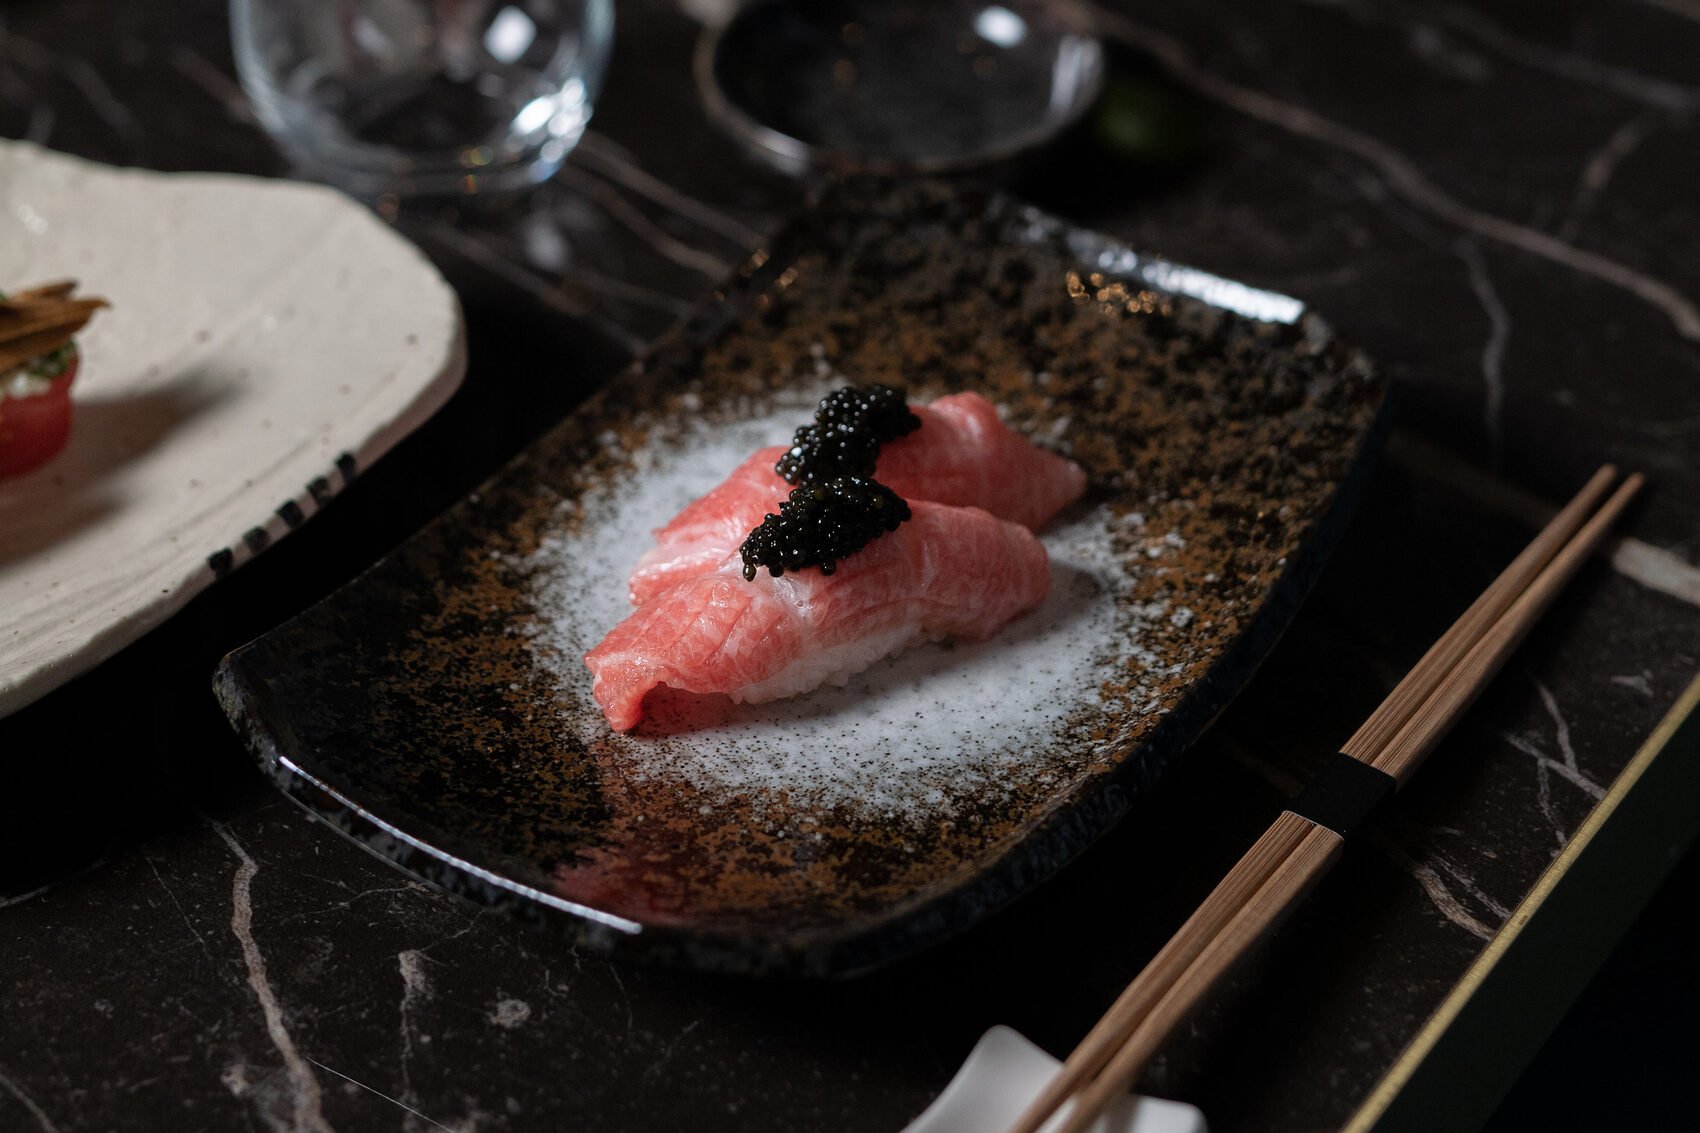 Hôtel de luxe - Maison Albar Hotels Le Vendome 5 étoiles - restaurant Yakuza by Olivier cuisine japonaise